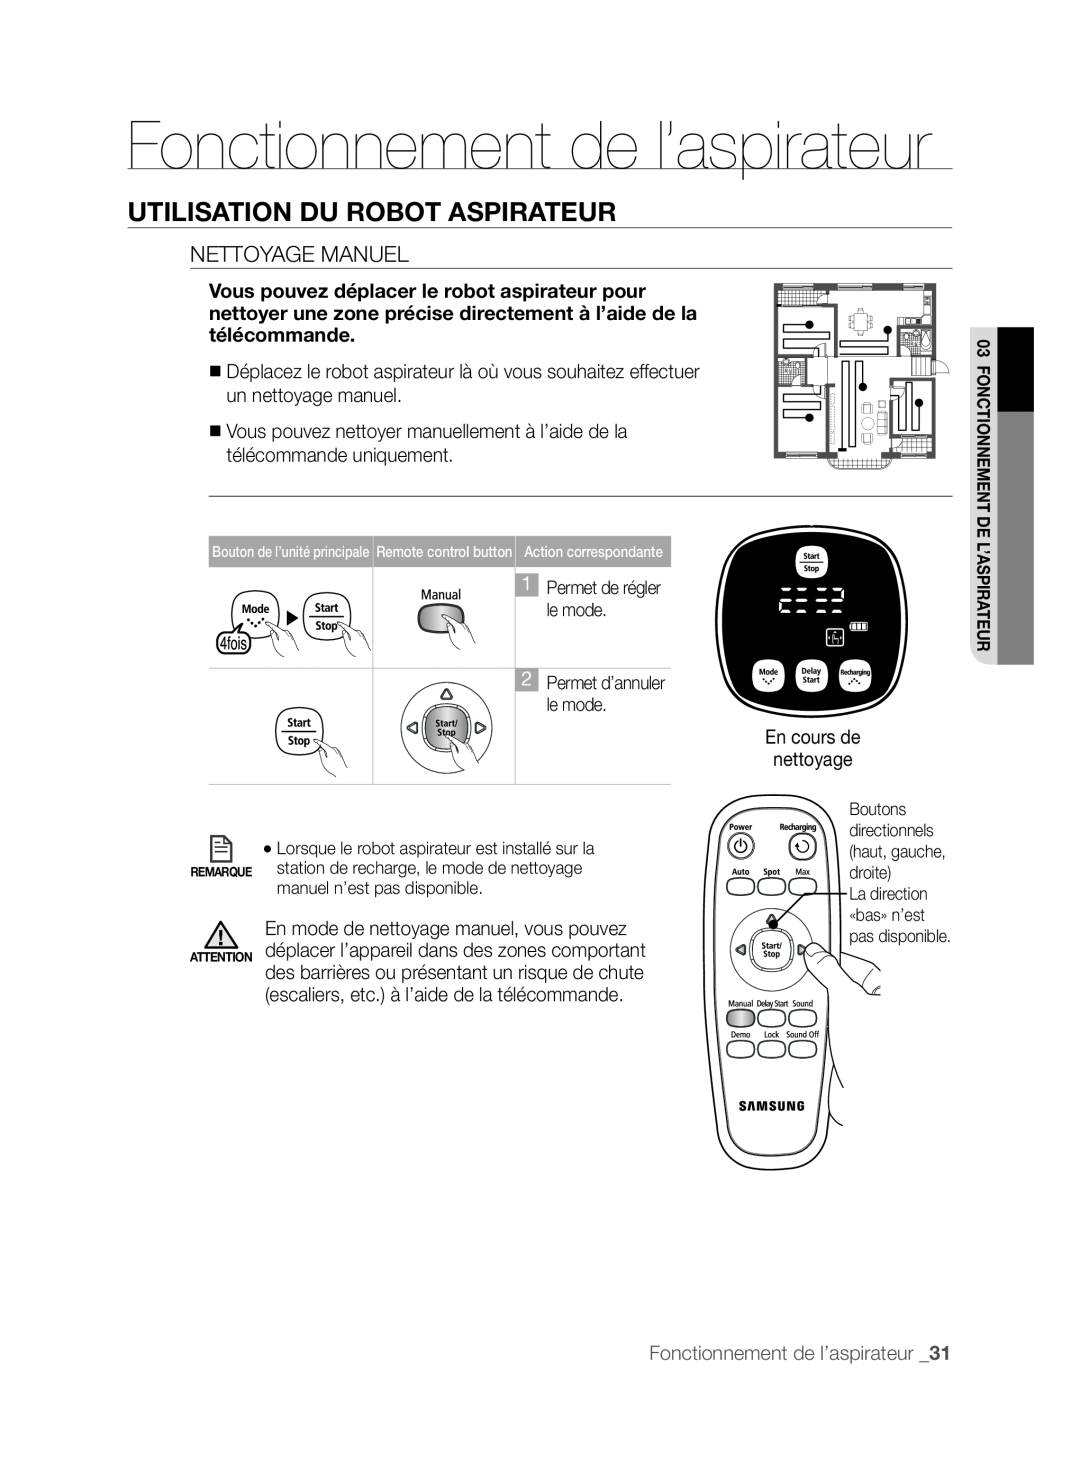 Samsung DJ68-00518A, VCR8830T1R, SR8830 Fonctionnement de l’aspirateur, Utilisation Du Robot Aspirateur, Nettoyage Manuel 